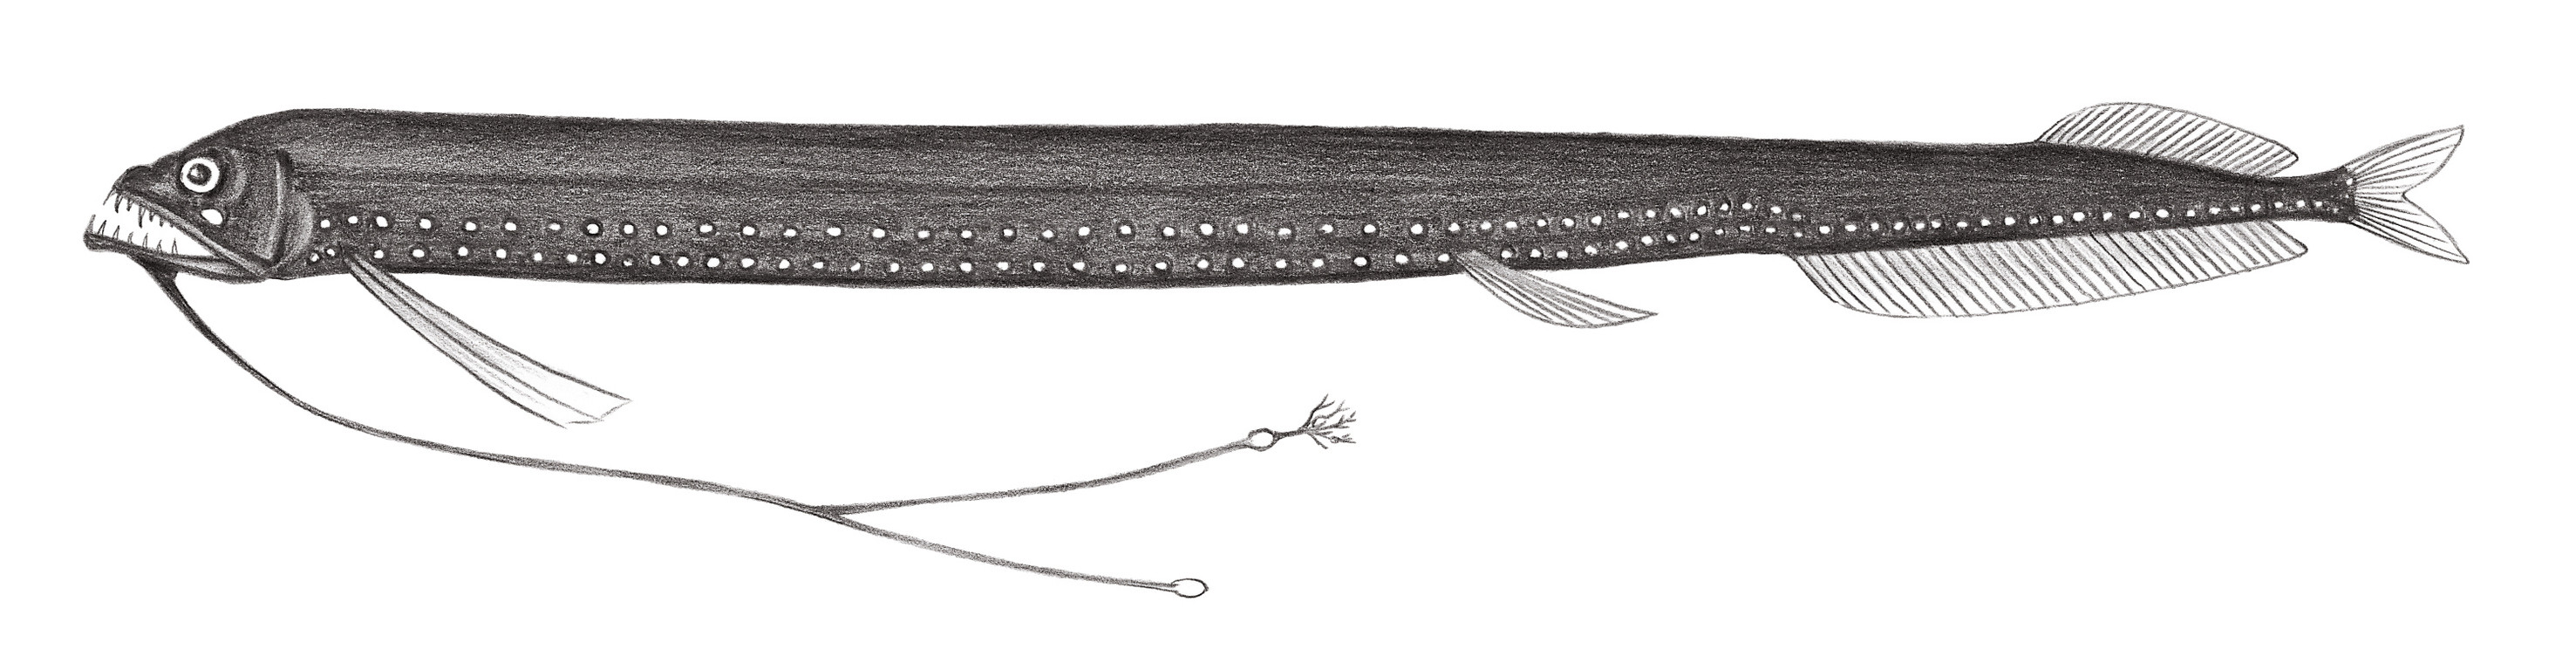 445.	歧鬚真巨口魚 Eustomia bifilis Gibbs, 1960